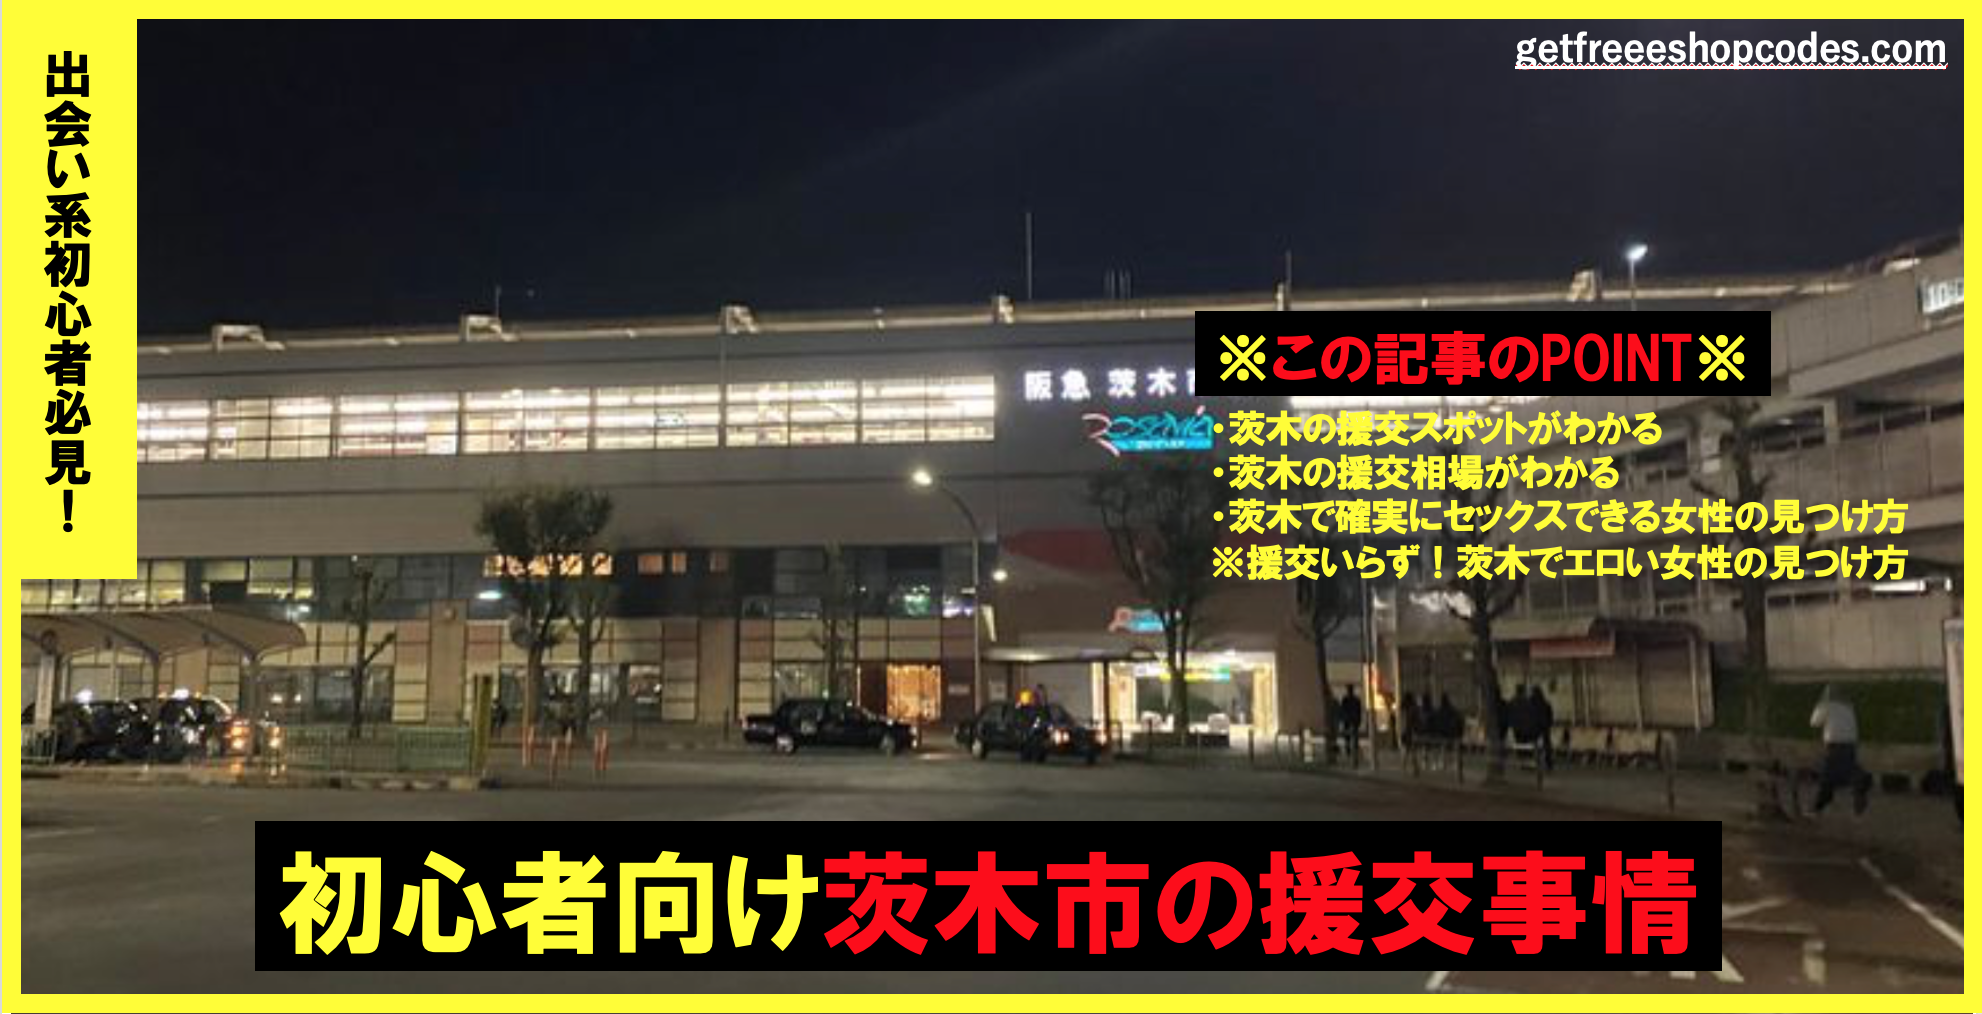 援交が多い茨木市で円光相場と割り切りで6人ヤレたおすすめのヤリモク出会い掲示板5選